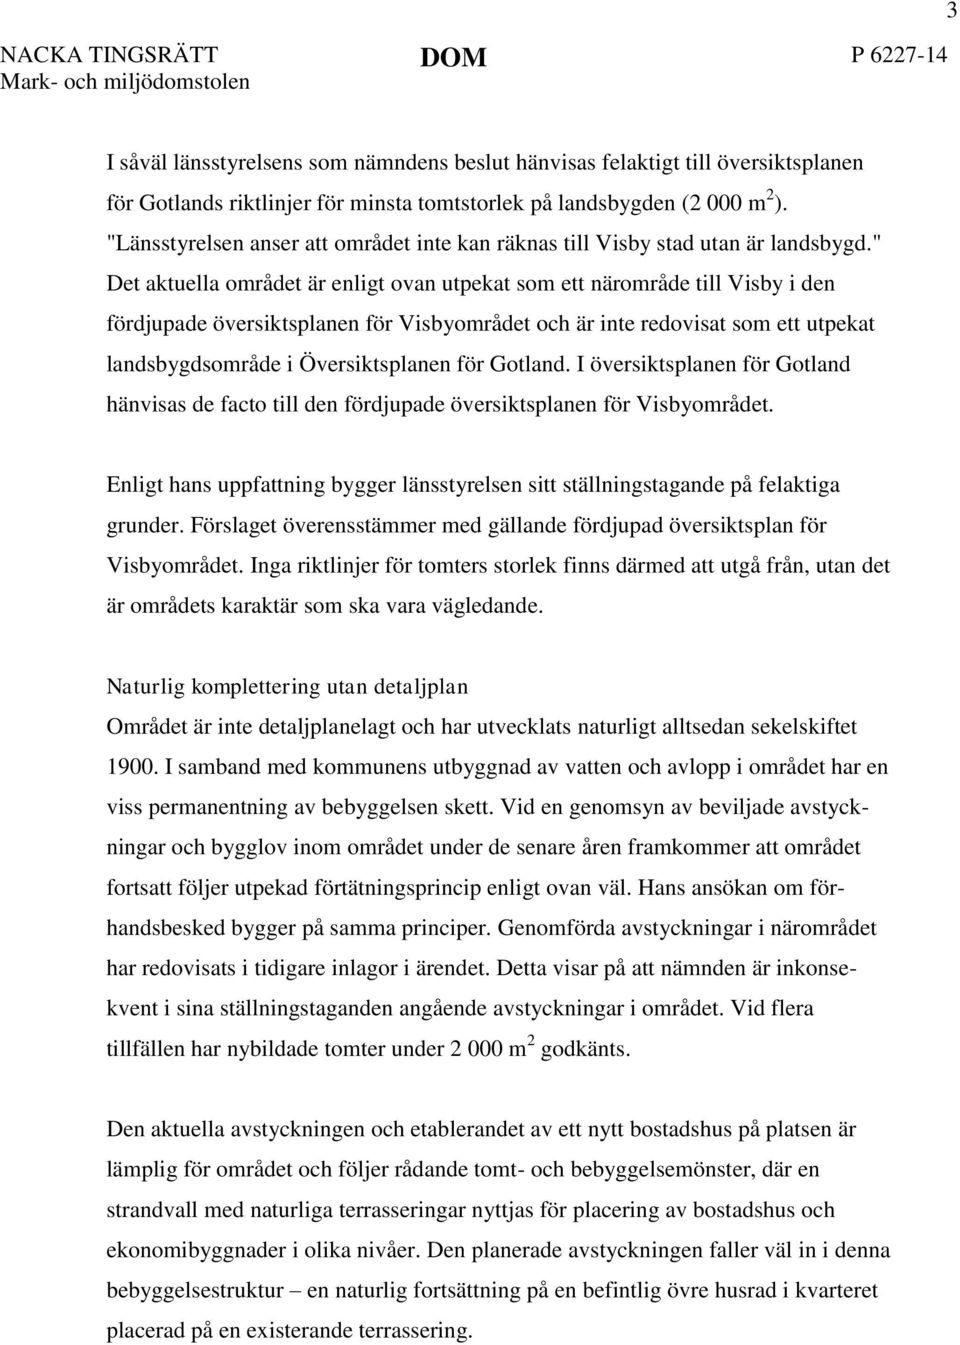 " Det aktuella området är enligt ovan utpekat som ett närområde till Visby i den fördjupade översiktsplanen för Visbyområdet och är inte redovisat som ett utpekat landsbygdsområde i Översiktsplanen